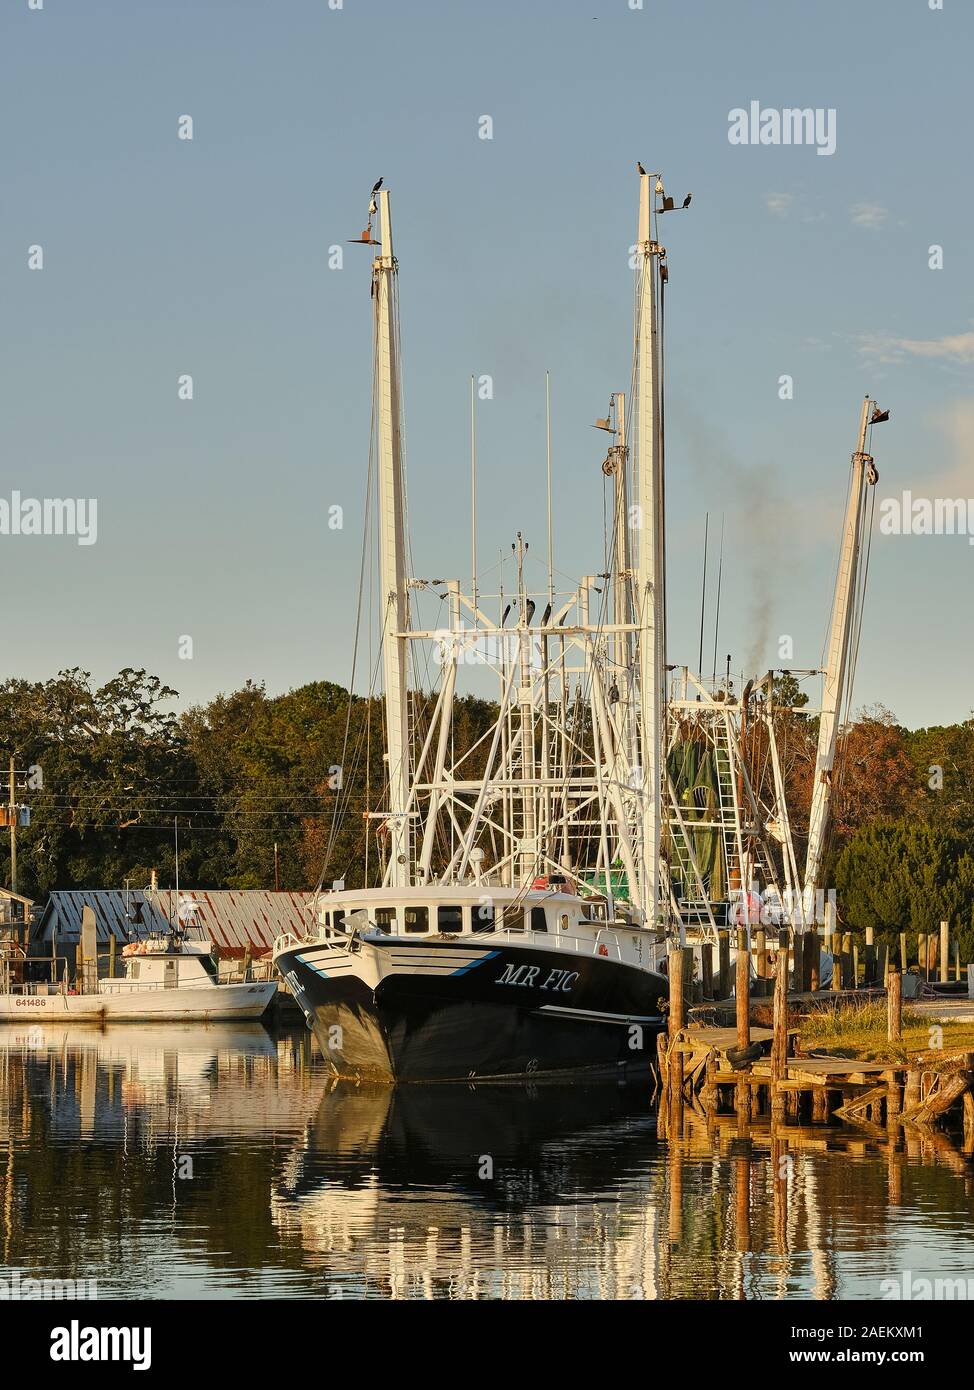 Barcos de pesca comercial y los barcos camaroneros amarrados, parte de la flota pesquera en Bayou La Batre, Alabama, Estados Unidos. Foto de stock